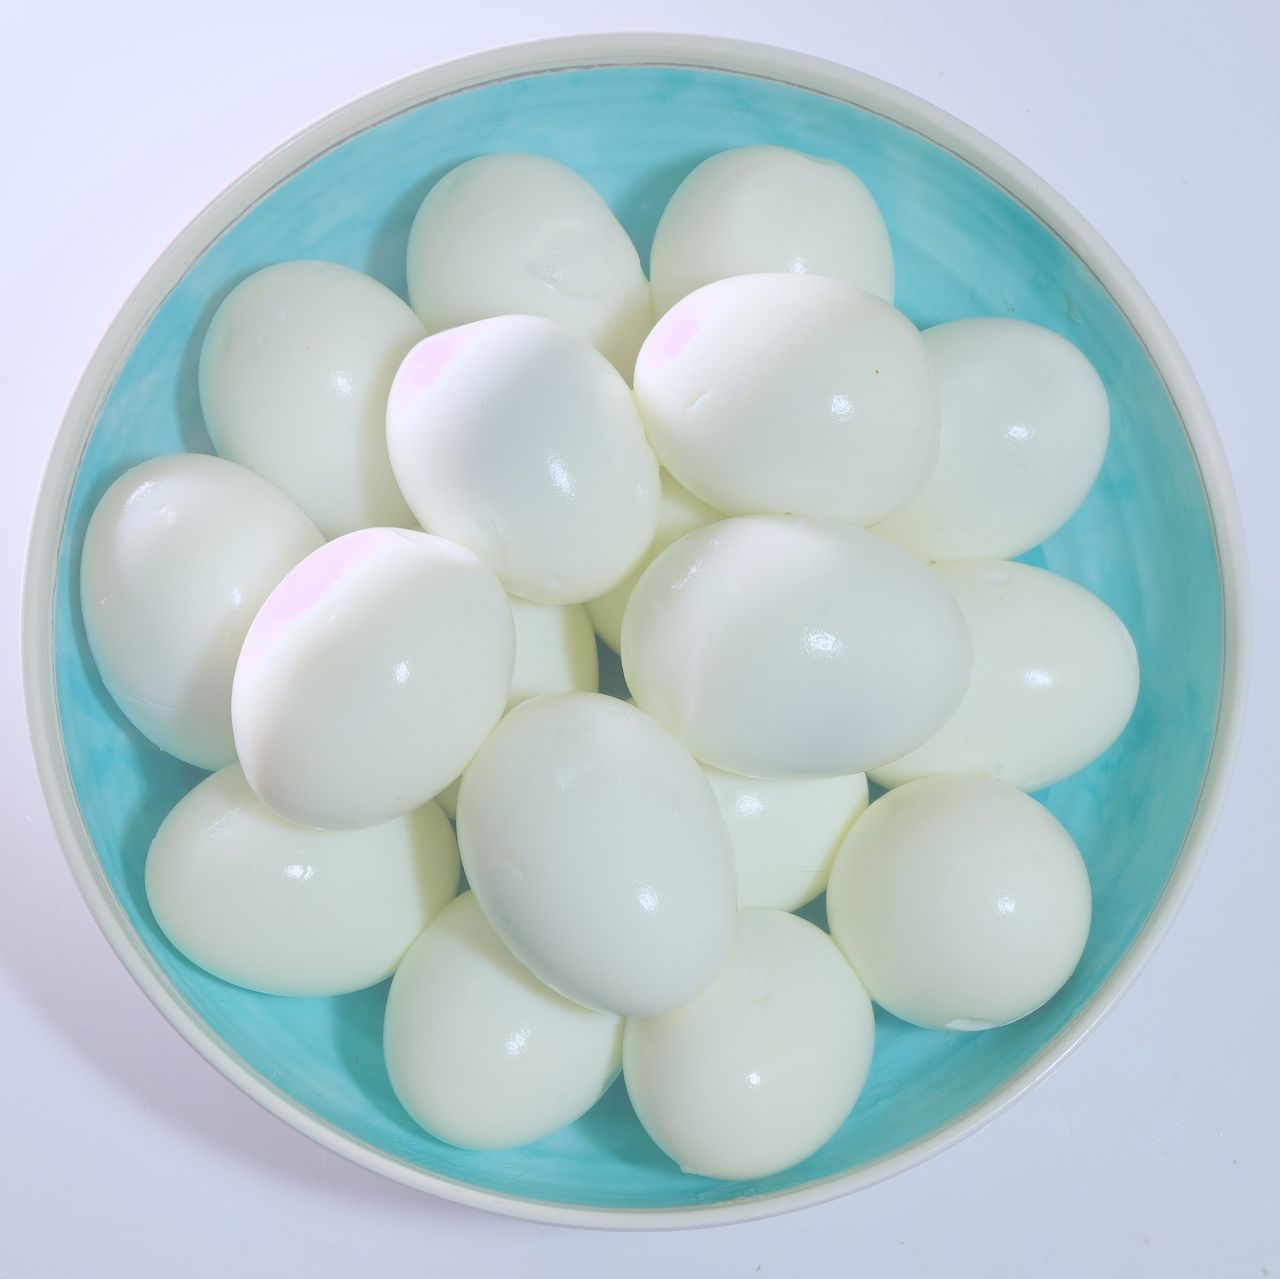 Jak obrać jajka, by zachowały idealny kształt? - Pyszności; Fot. Pixabay